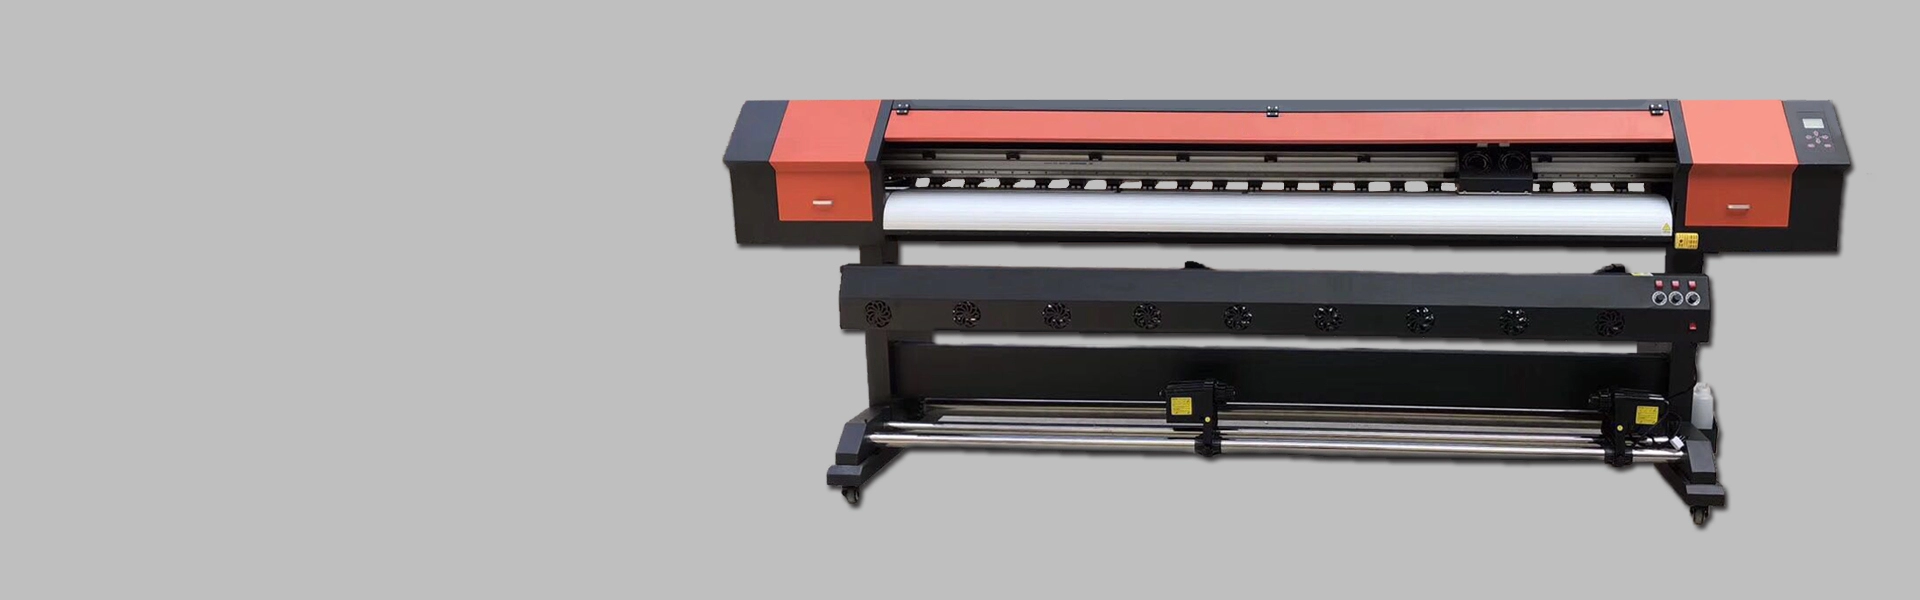 Impresora XP600 de 2,5 m